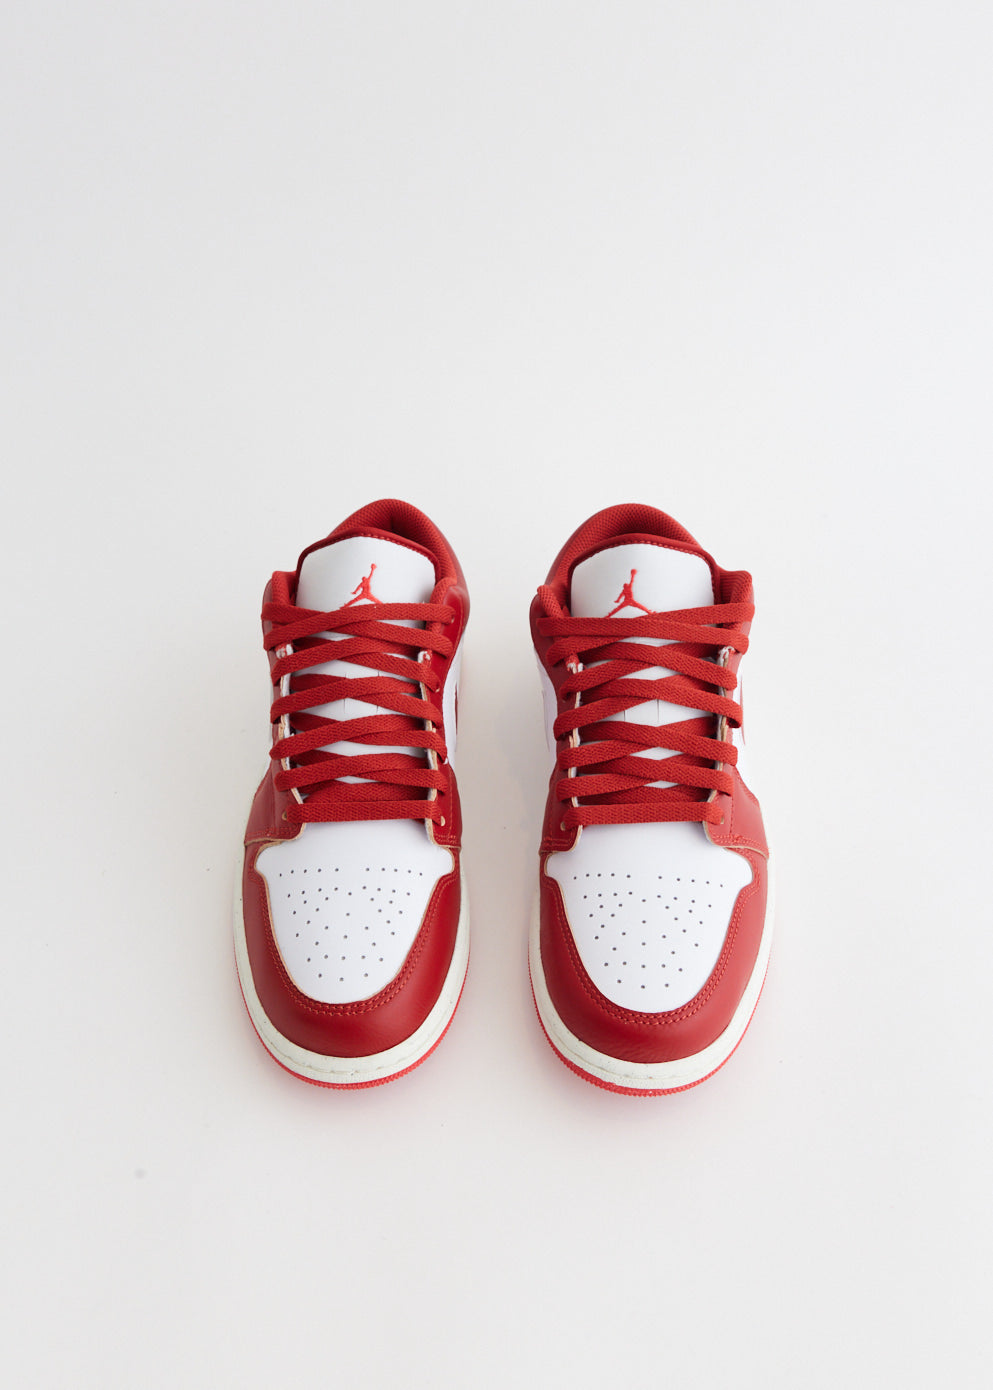 Air Jordan 1 Low 'Dune Red' Sneakers